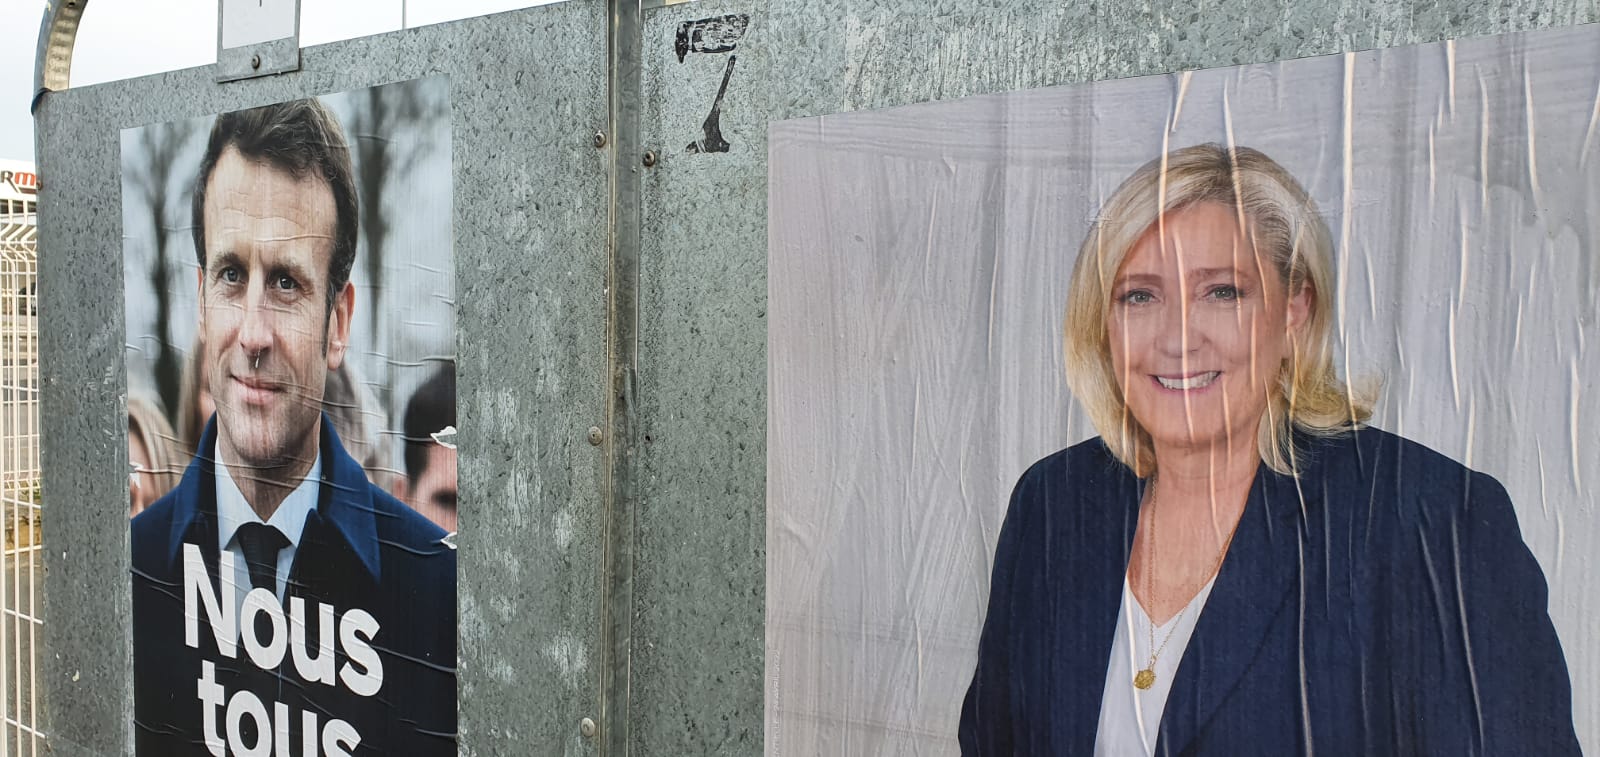 Affiches de campagne montrant Macron et Le Pen à Calais (MEE/Frank Andrews)